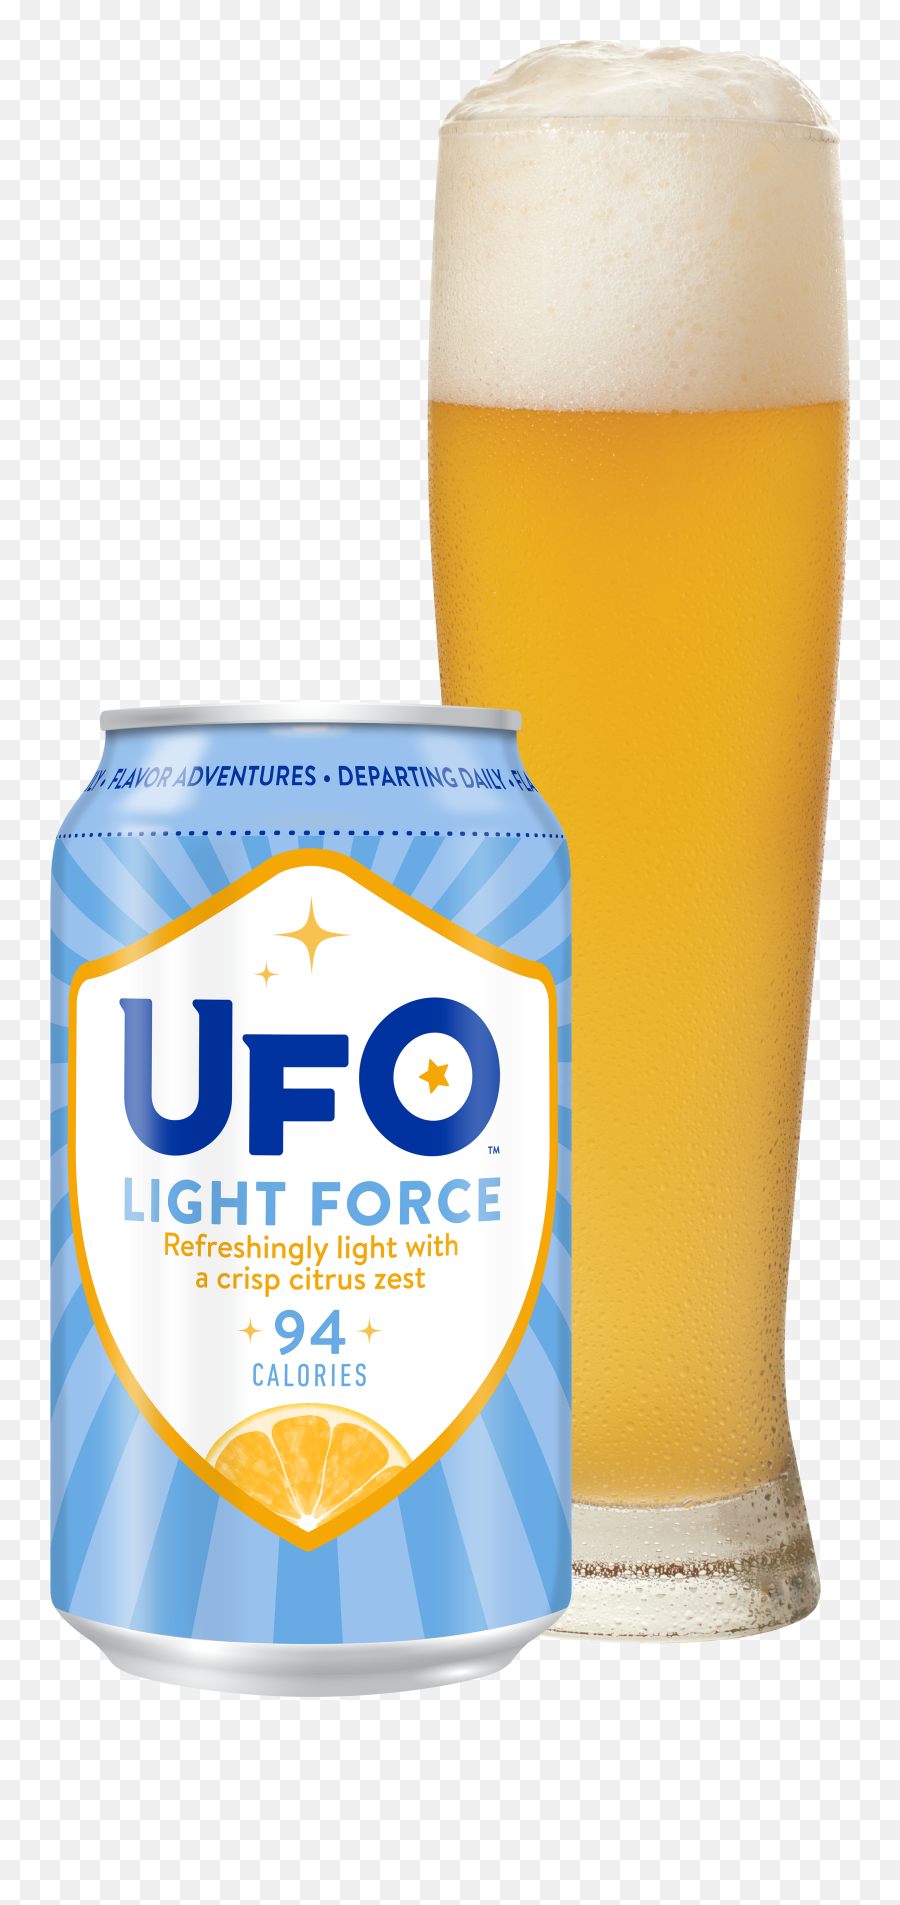 Light Force - Ufo Light Force Beer Png,Ufo Transparent